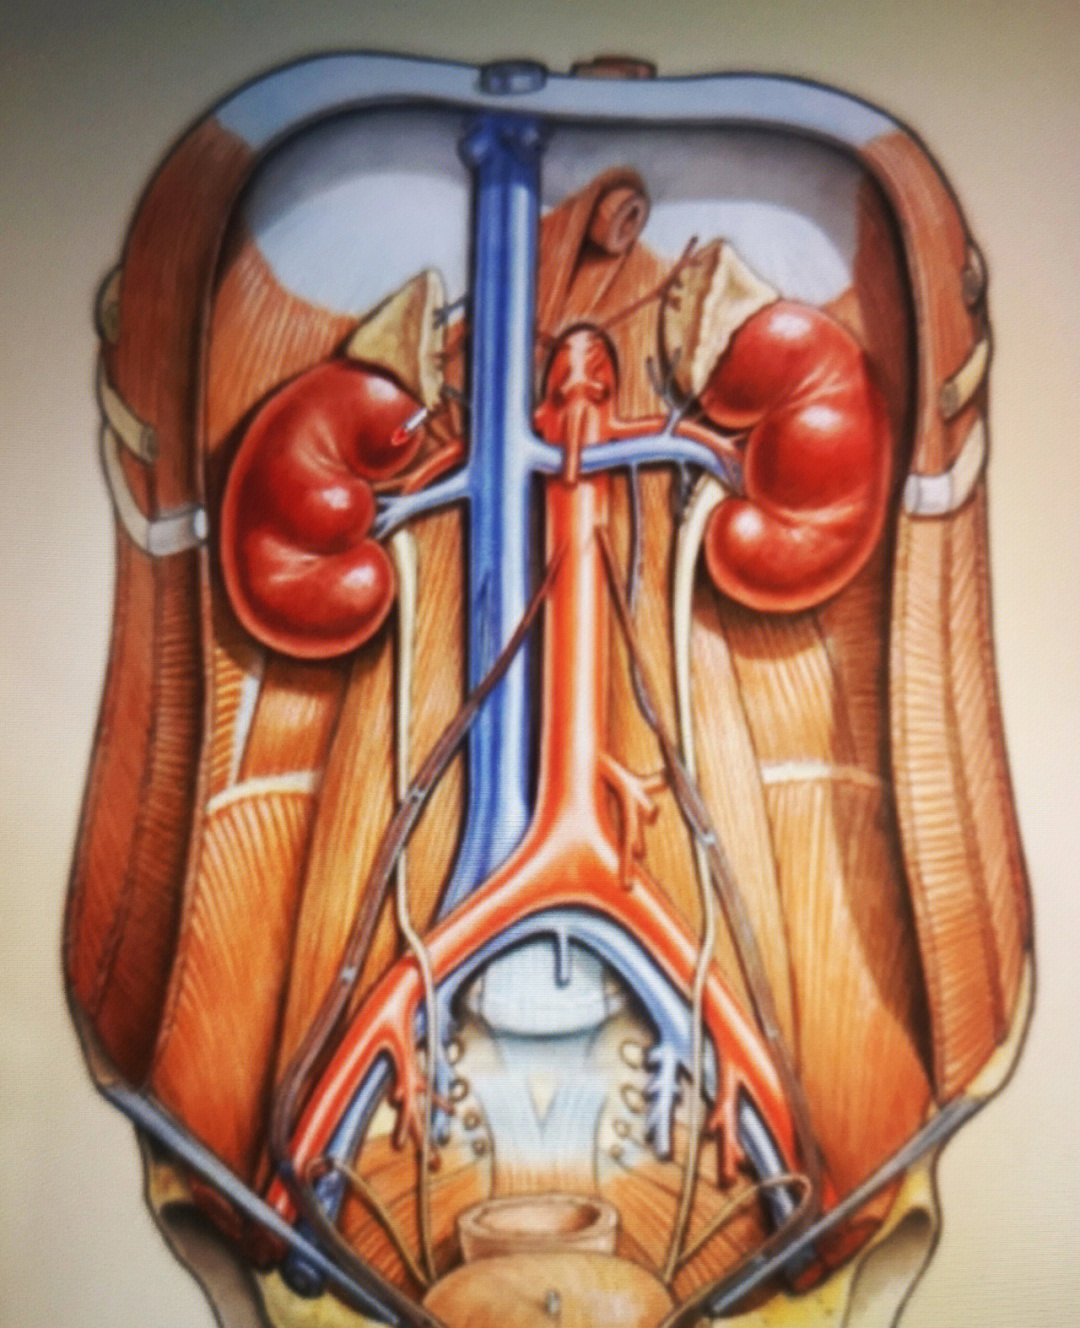 肾脏解剖位置图片